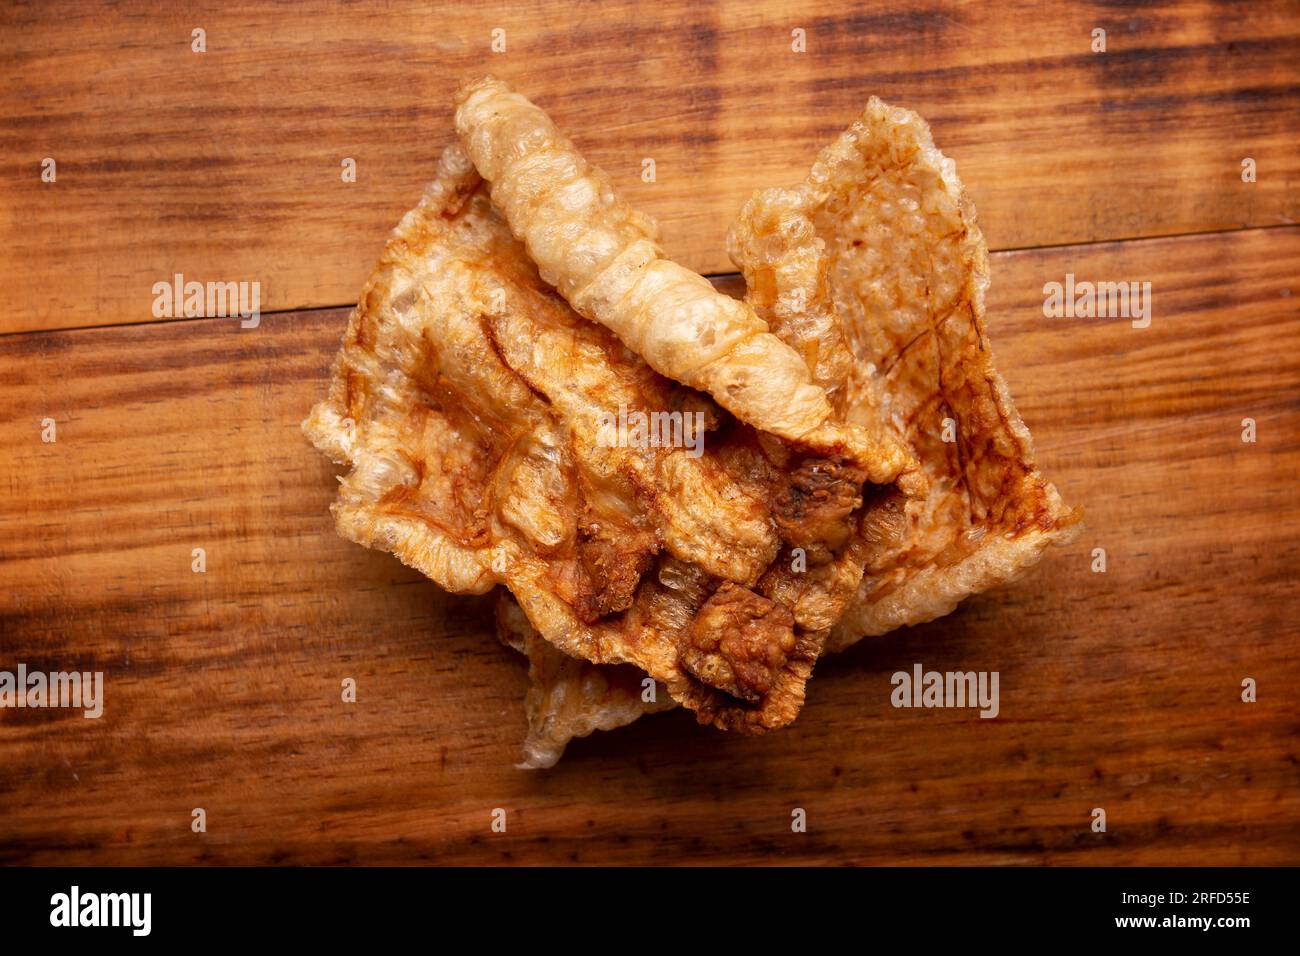 Chicharron. Croustillant croûte de porc frite, sont des morceaux de peau de porc aérée et frite, ingrédient mexicain traditionnel ou collation. vue de dessus de la table. Banque D'Images